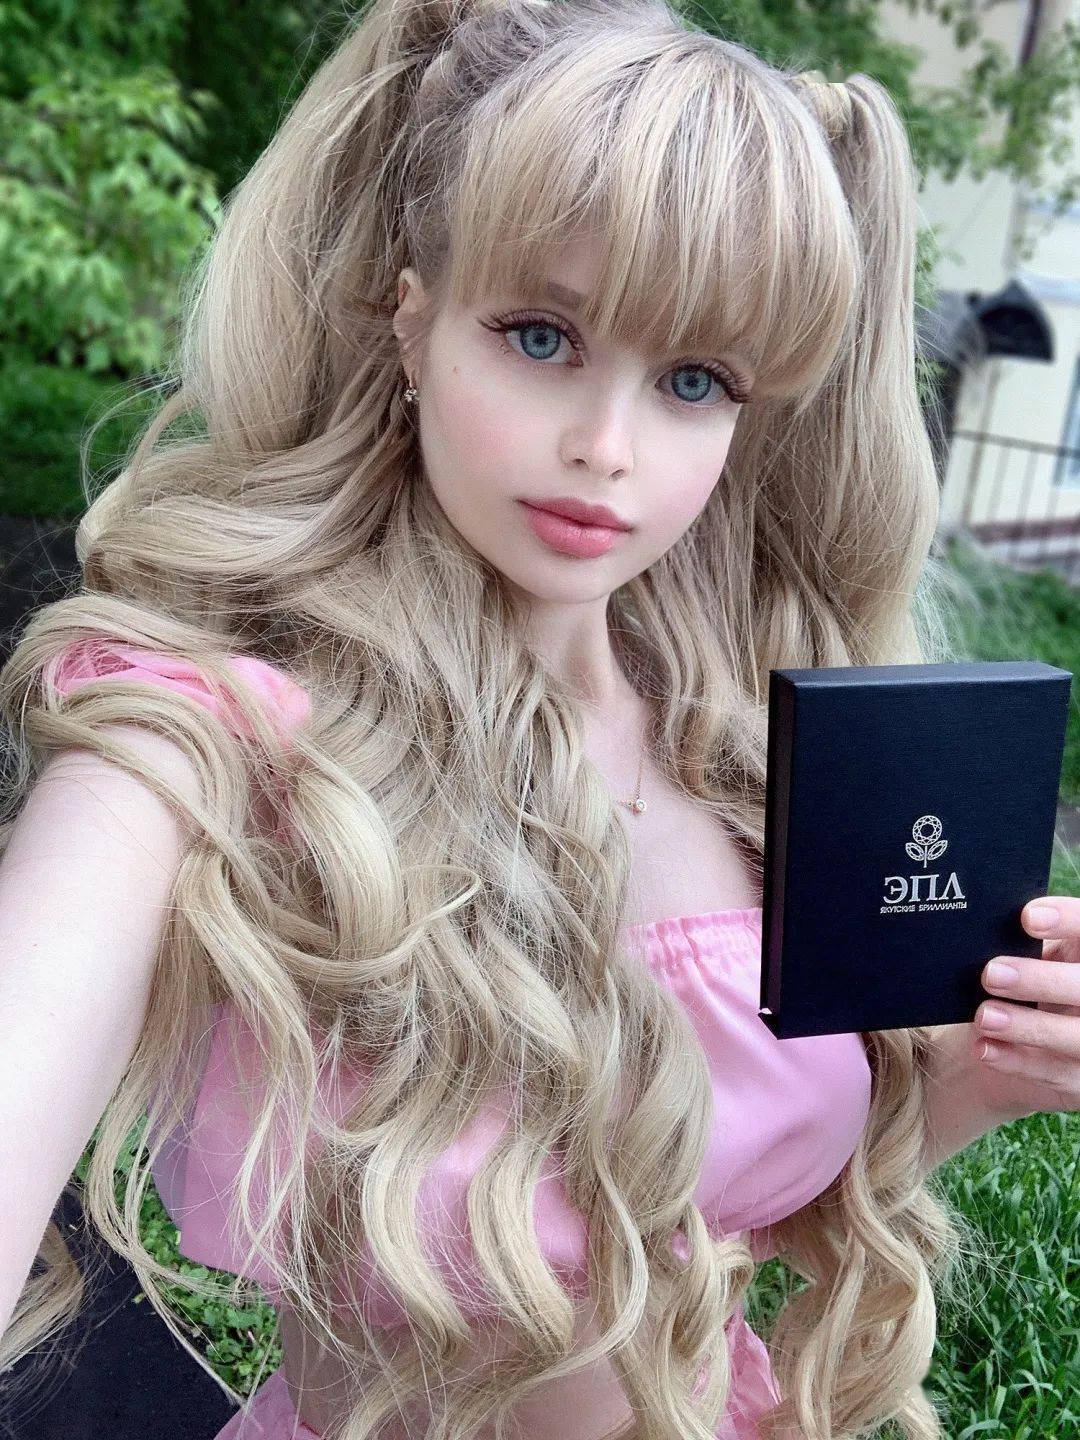 真人间芭比俄罗斯一模特6岁被当芭比娃娃养大至如今33岁背后的故事竟